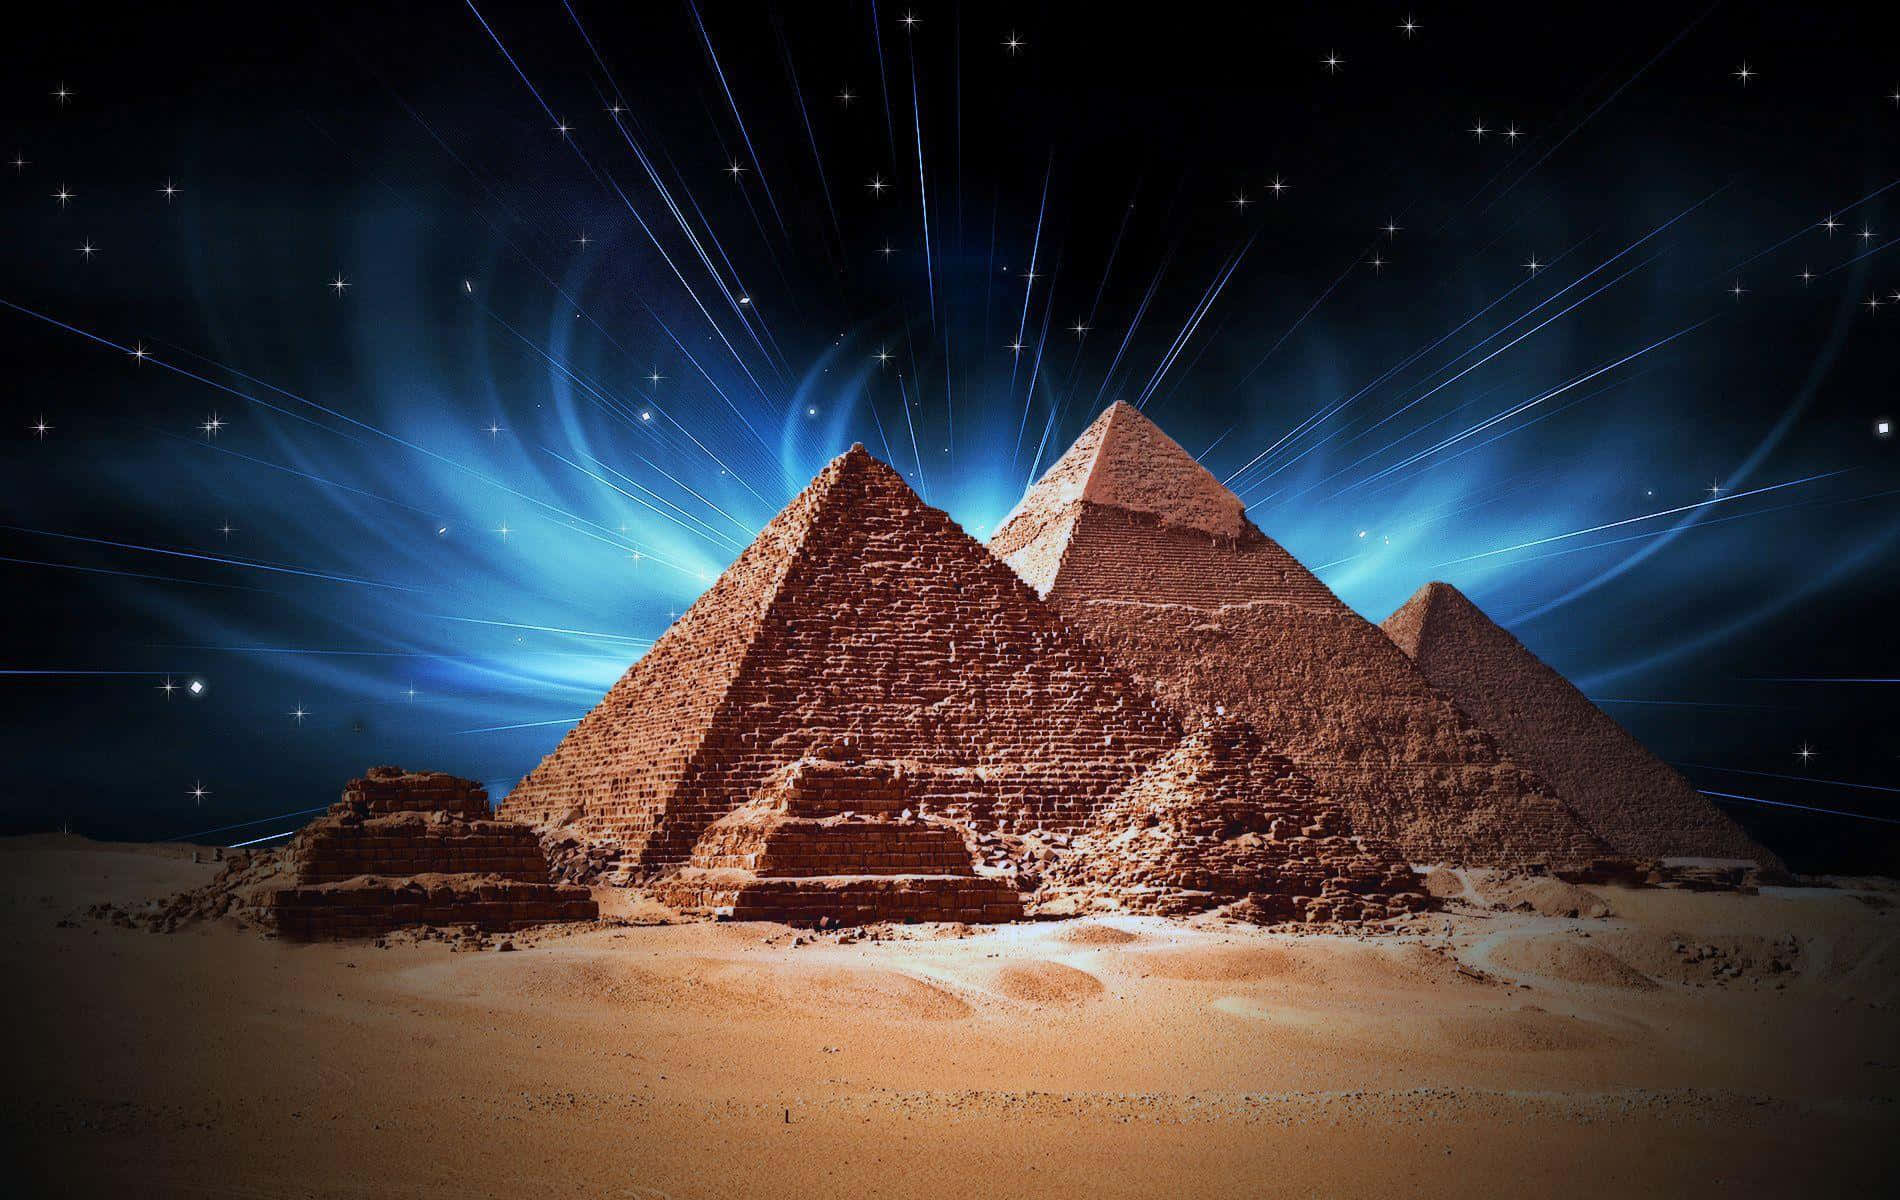 Lepiramidi Di Giza Sono Mostrate Sullo Sfondo